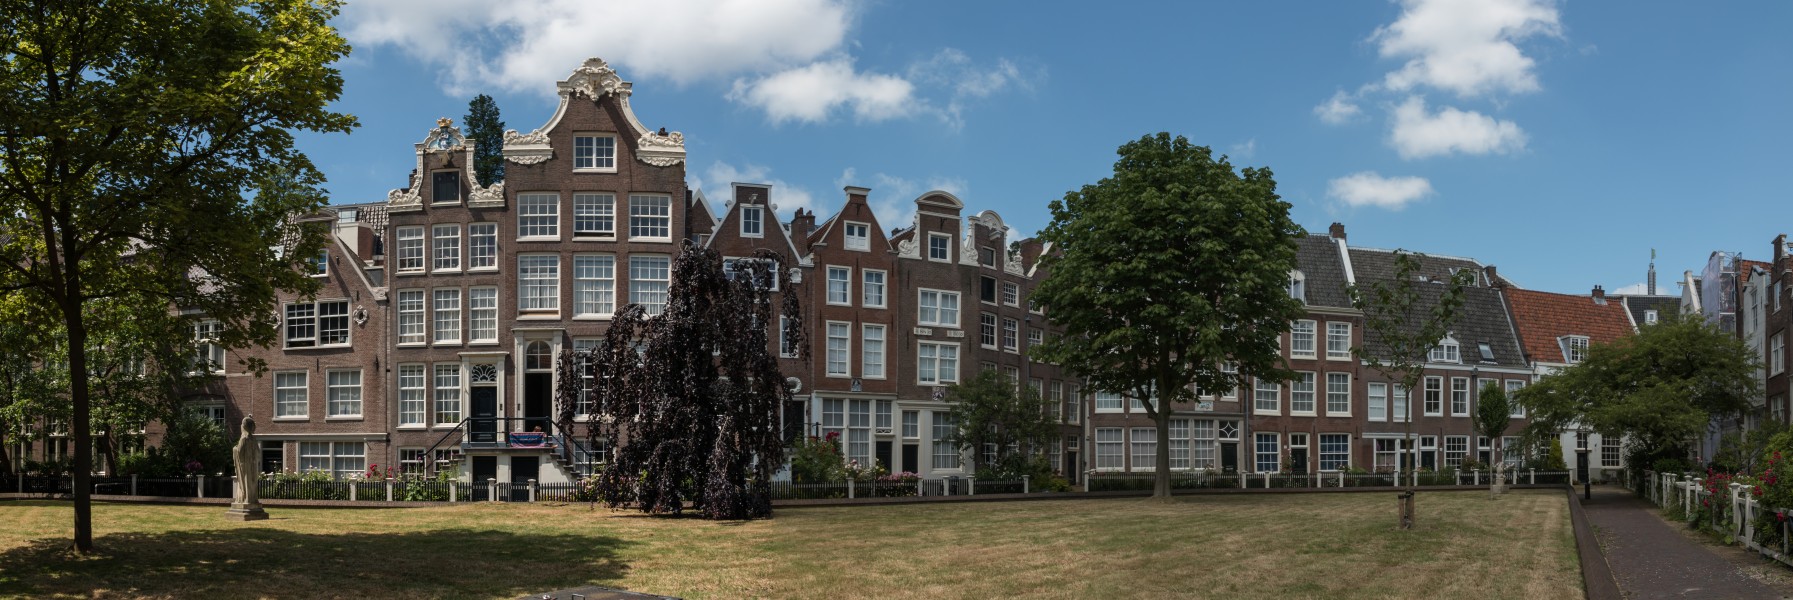 Amsterdam (NL), Begijnhof -- 2015 -- 7214